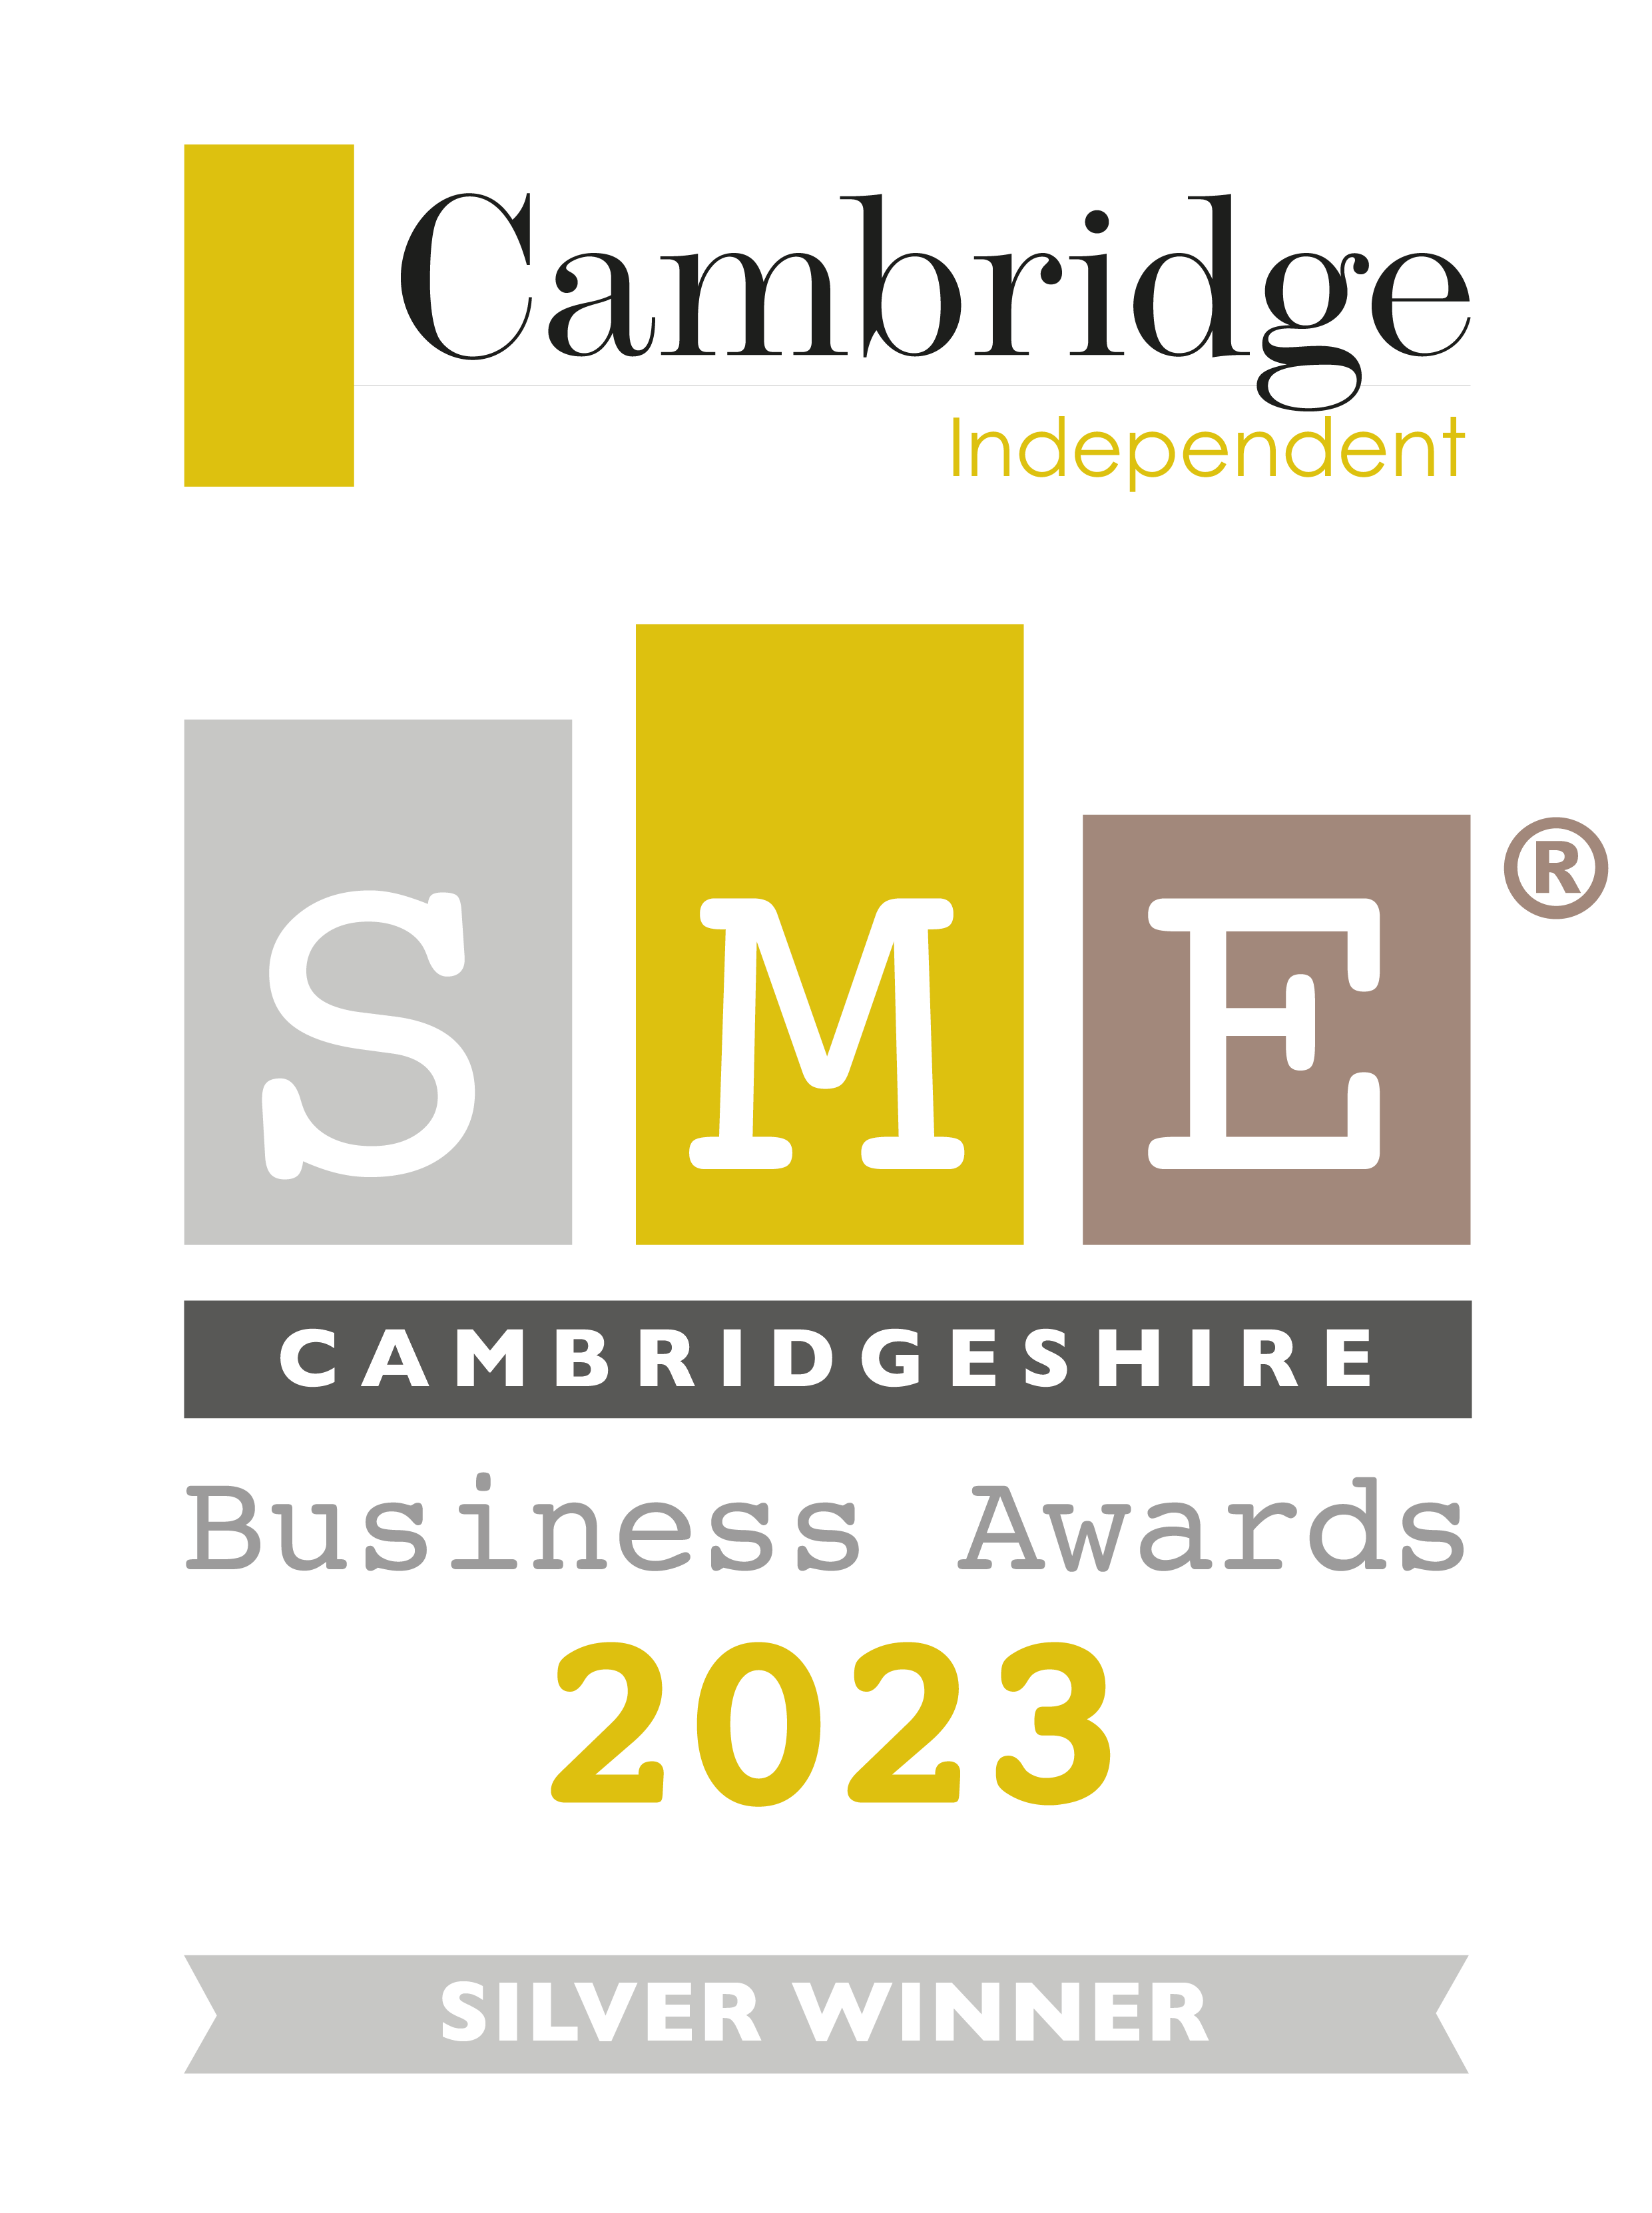 Cambridge Independent silver award logo